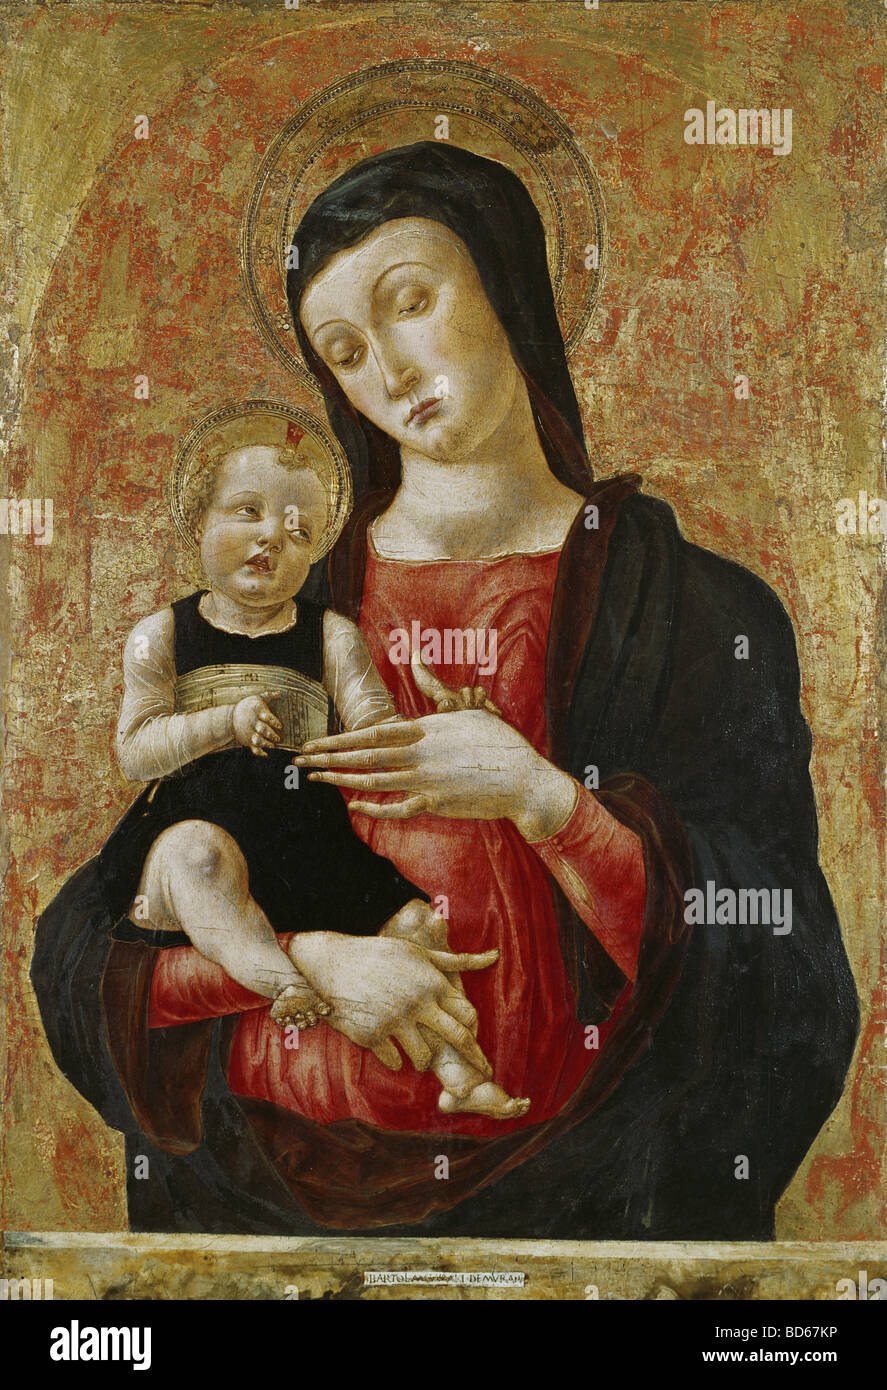 Bildende Kunst, Vivarini, Bartolomeo (ca. 1432 - circa 1499), Gemälde "Madonna mit Kind", Museo Correr, Venedig, 15. Jahrhundert Stockfoto